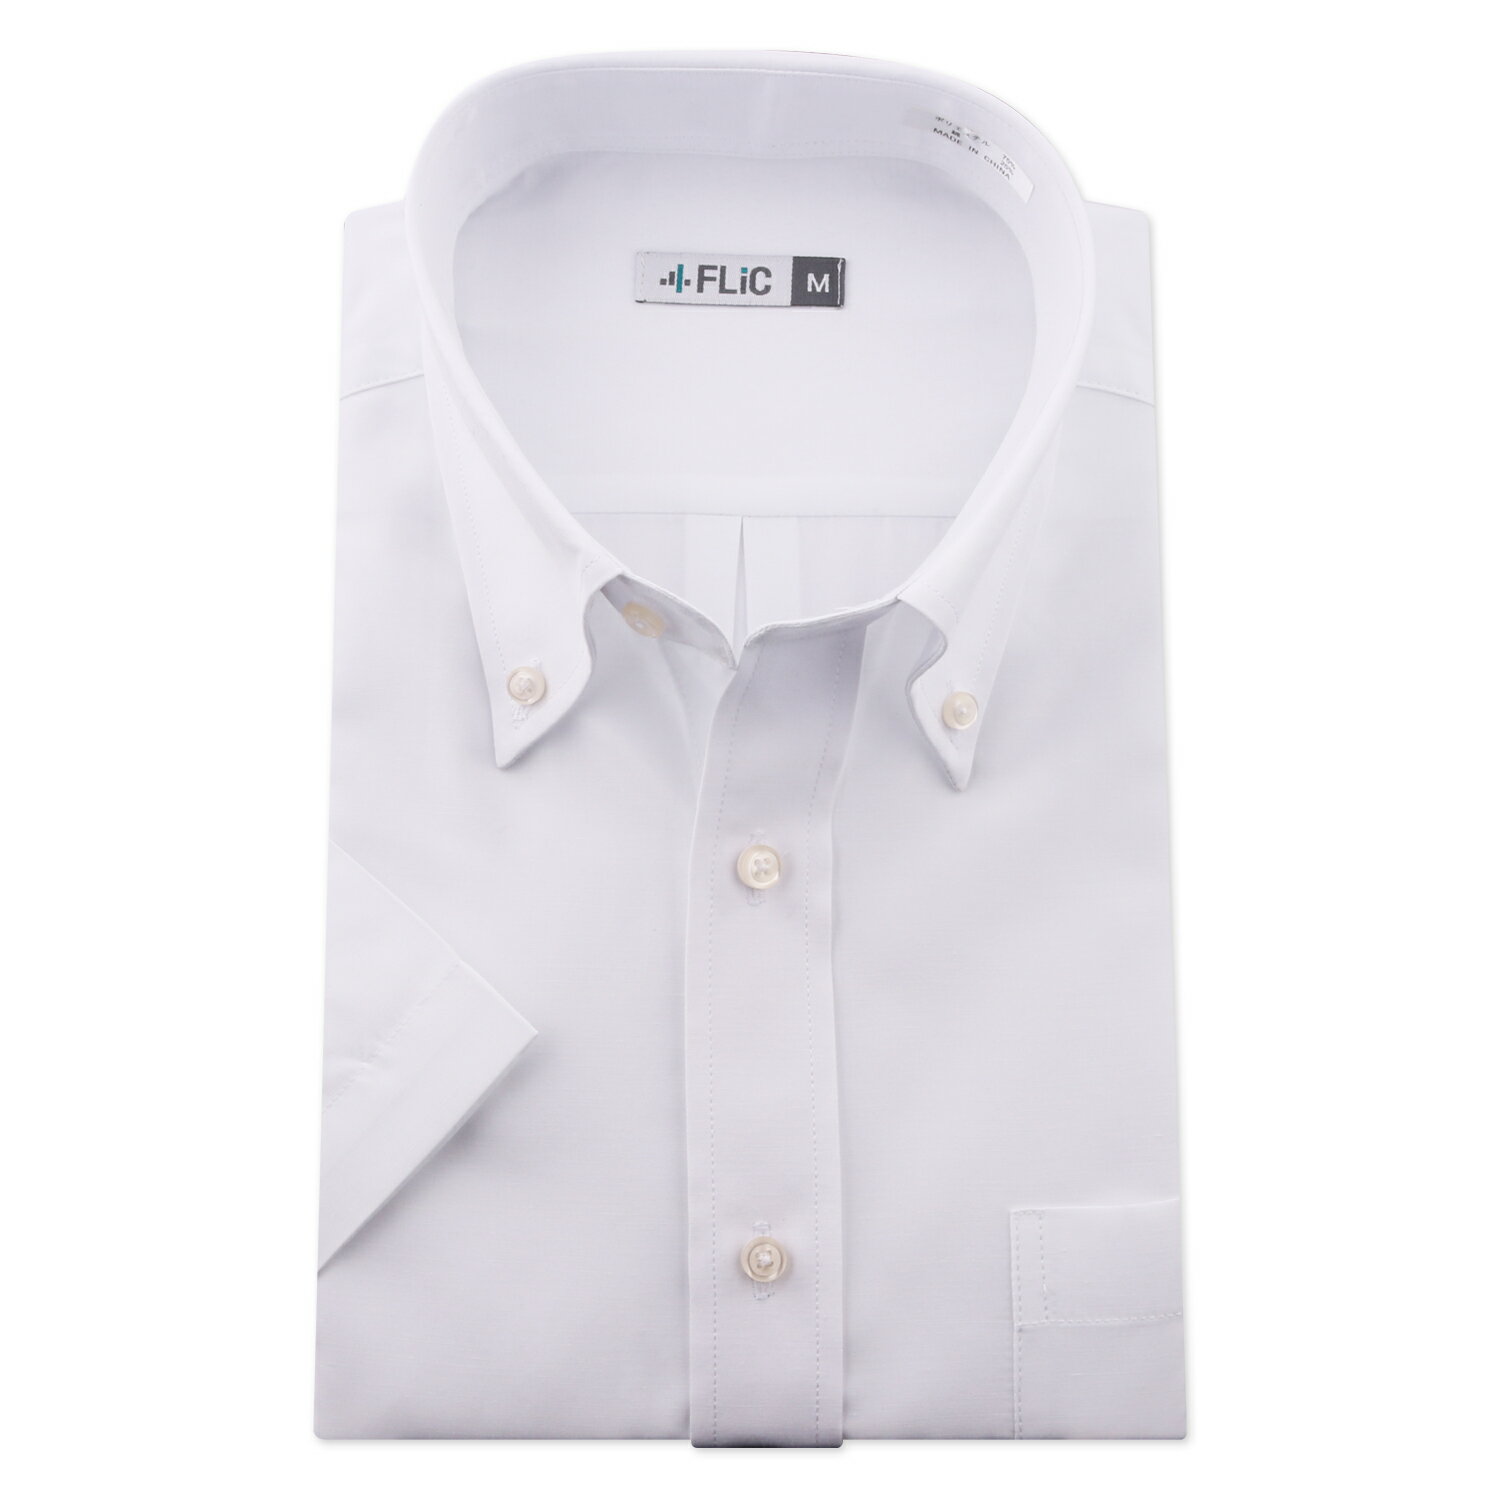 ワイシャツ 半袖 白無地 白 形態安定 メンズ シャツ ドレスシャツ ビジネス ゆったり スリム 制服 yシャツ 冠婚葬祭 大きいサイズも カッターシャツ 白シャツ/hb701